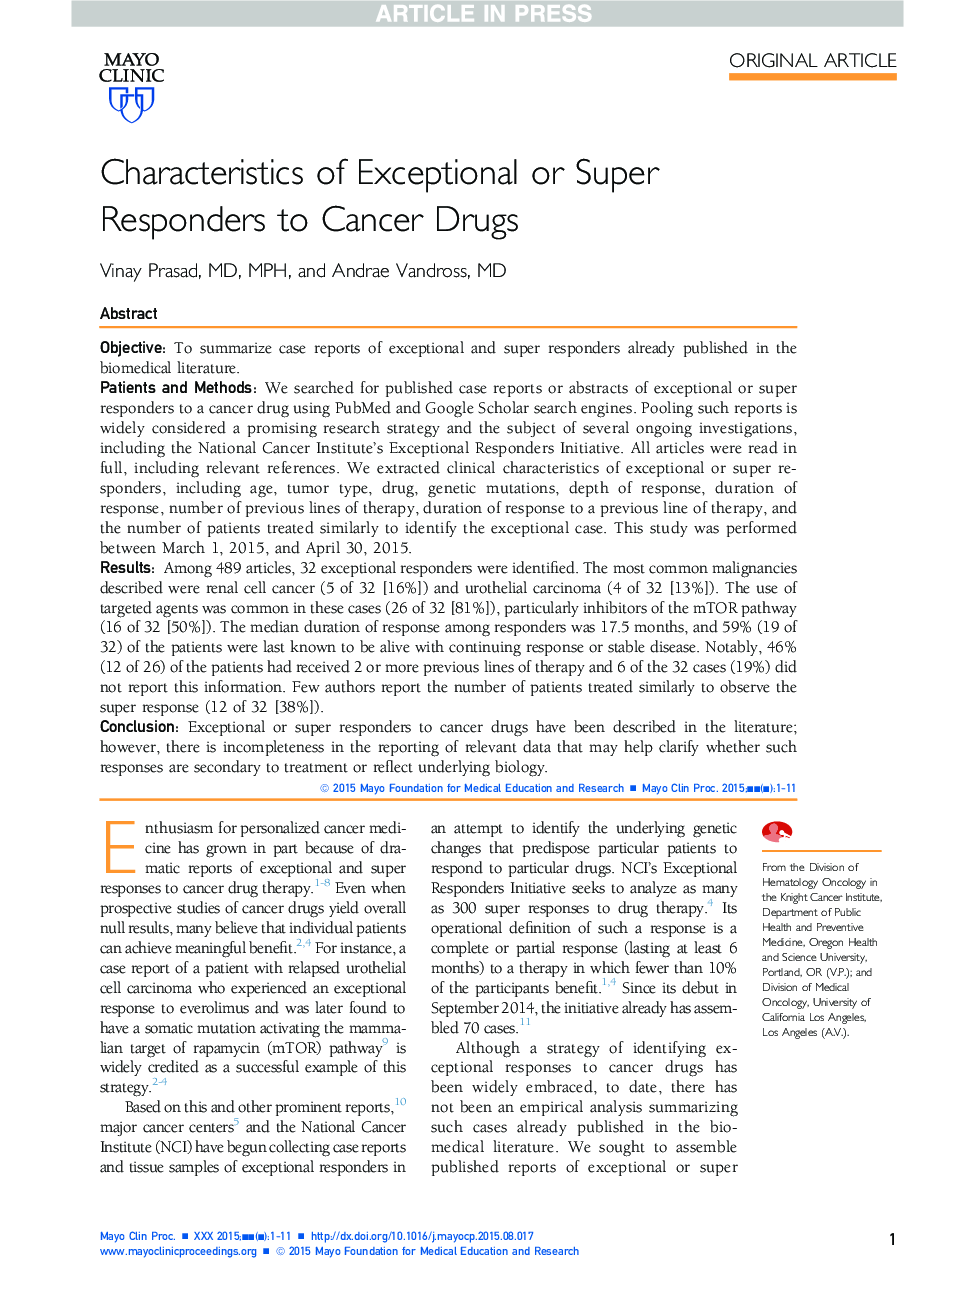 ویژگی های خاص و یا سوپر پاسخ به مواد مخدر سرطان 